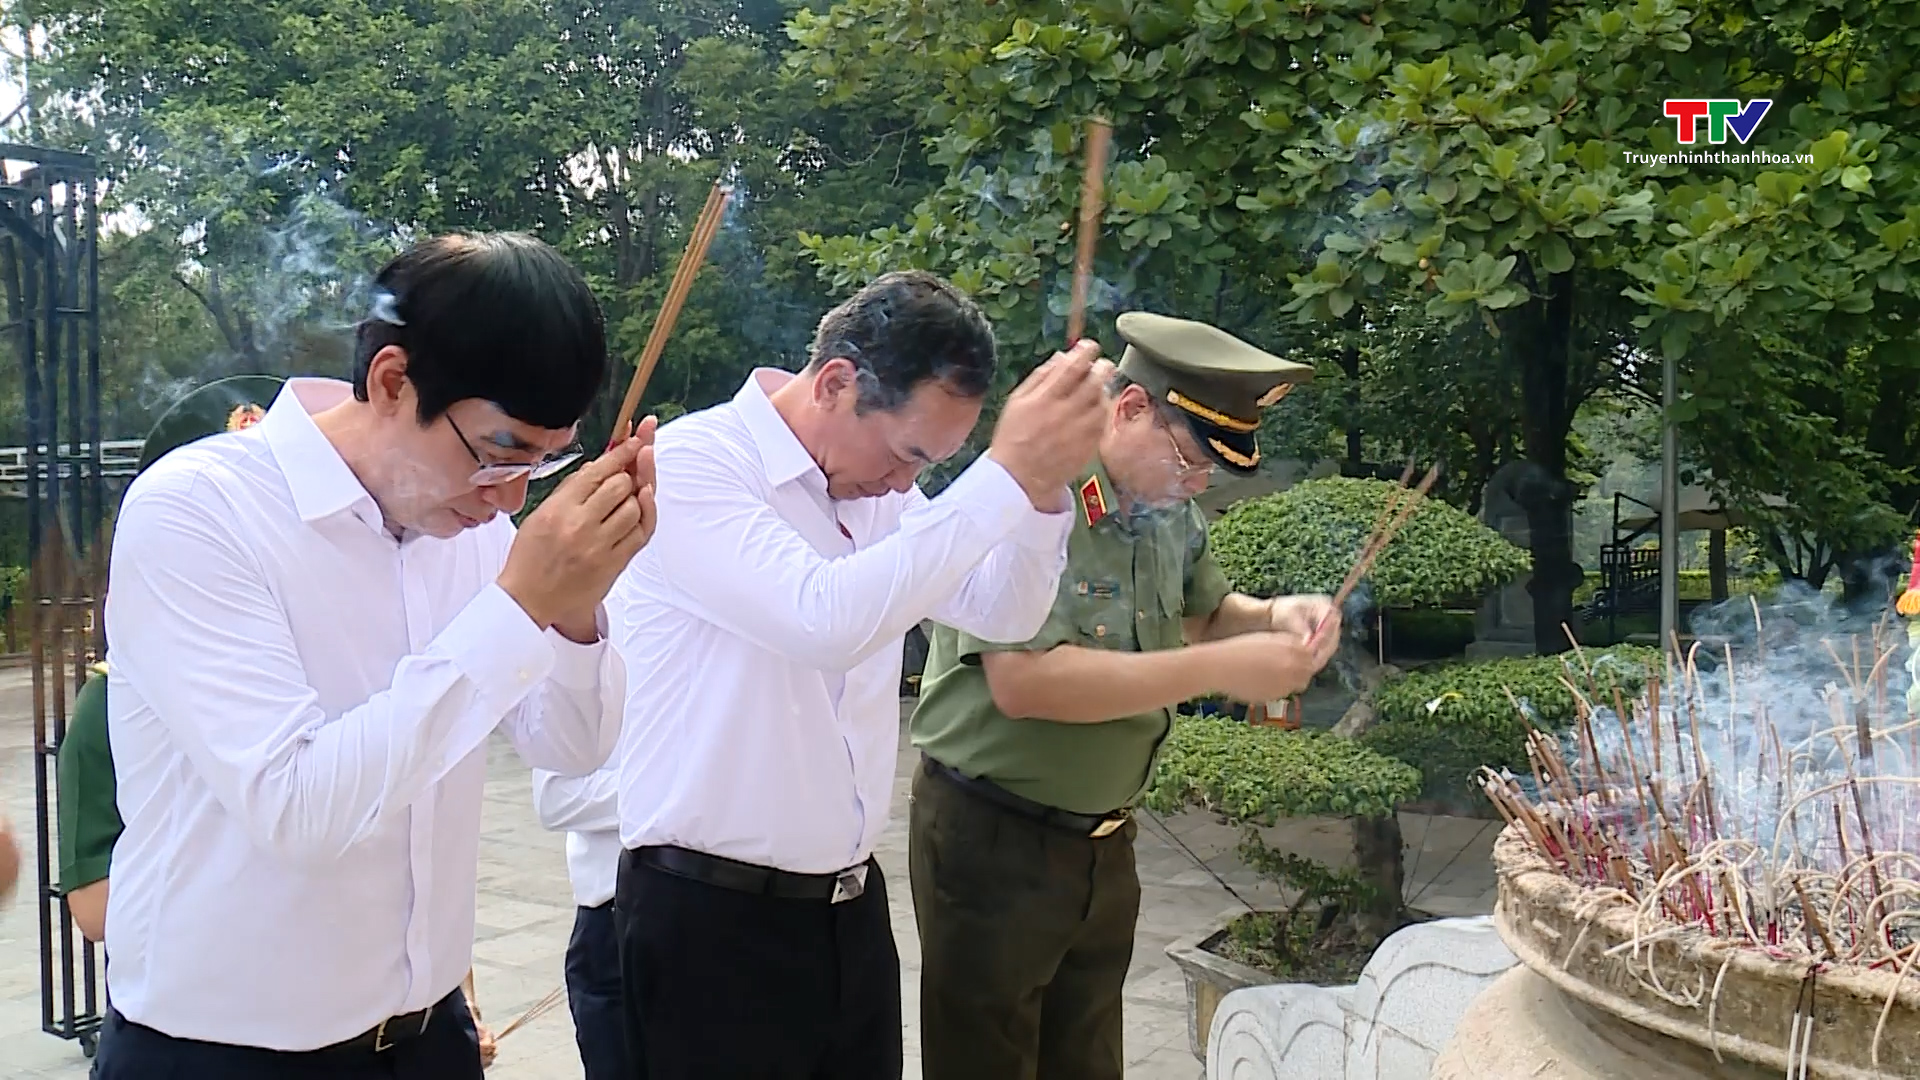 Đồng chí Phó Bí thư Tỉnh ủy Trịnh Tuấn Sinh dâng hương các liệt sỹ đang yên nghỉ tại Quảng Bình và Quảng Trị- Ảnh 4.